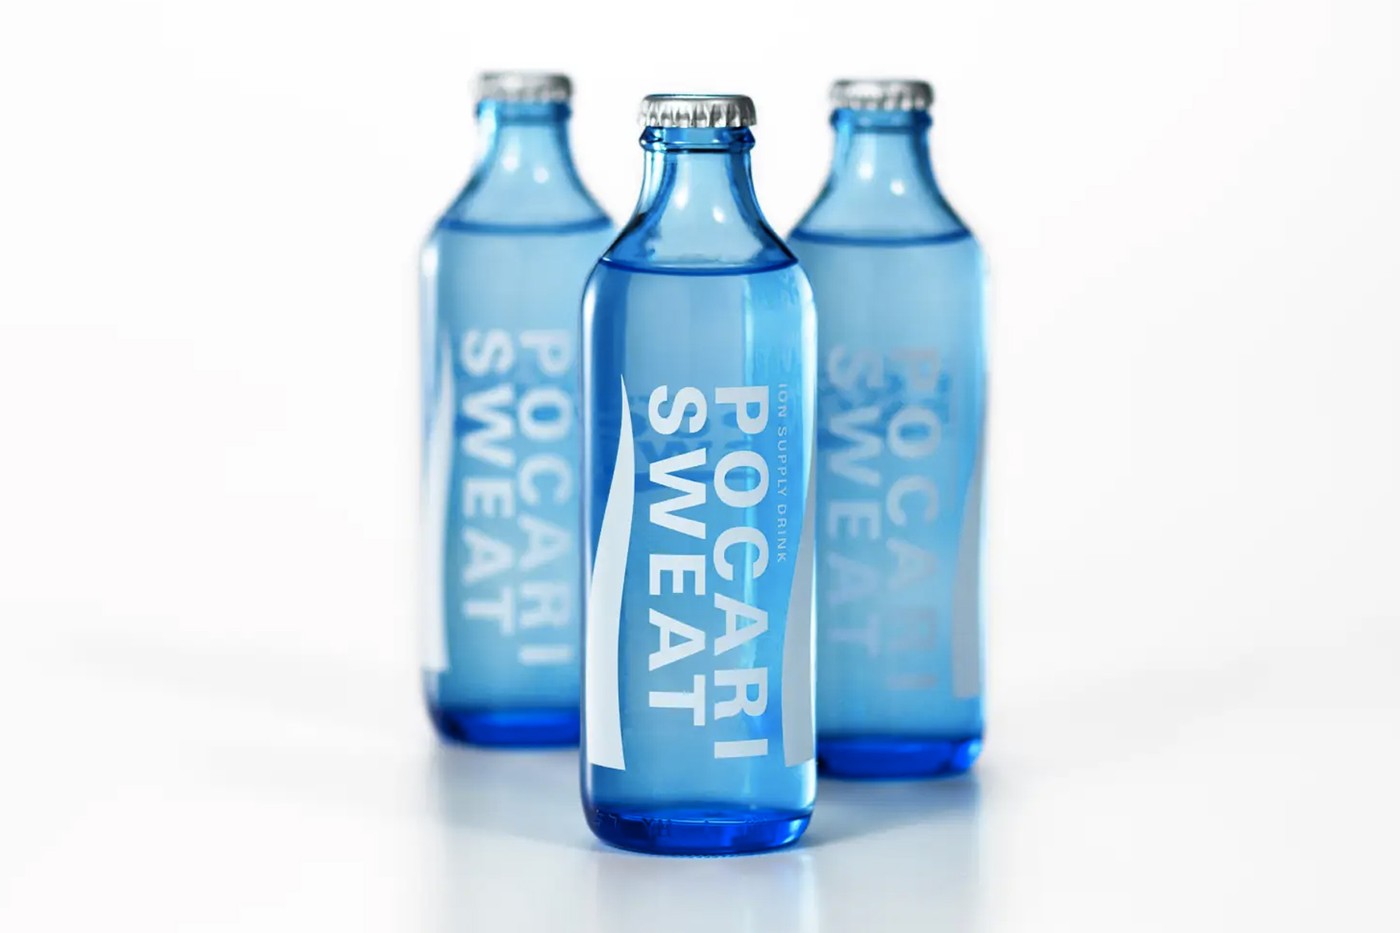 宝矿力 Pocari Sweat 推出可回收环保玻璃瓶包装